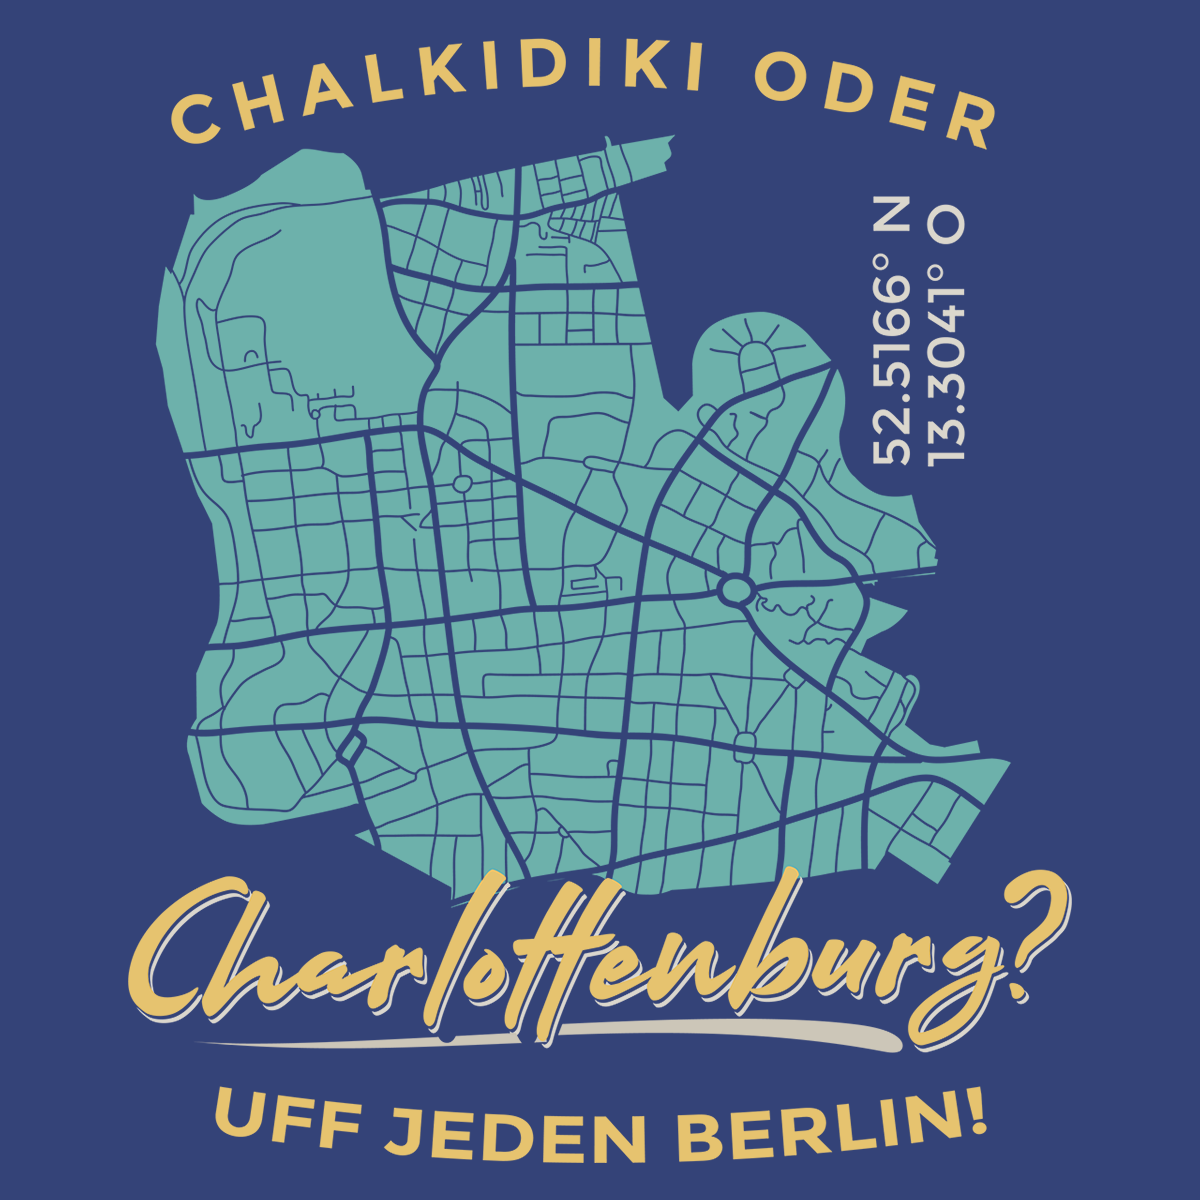 Chalkidiki oder Charlottenburg